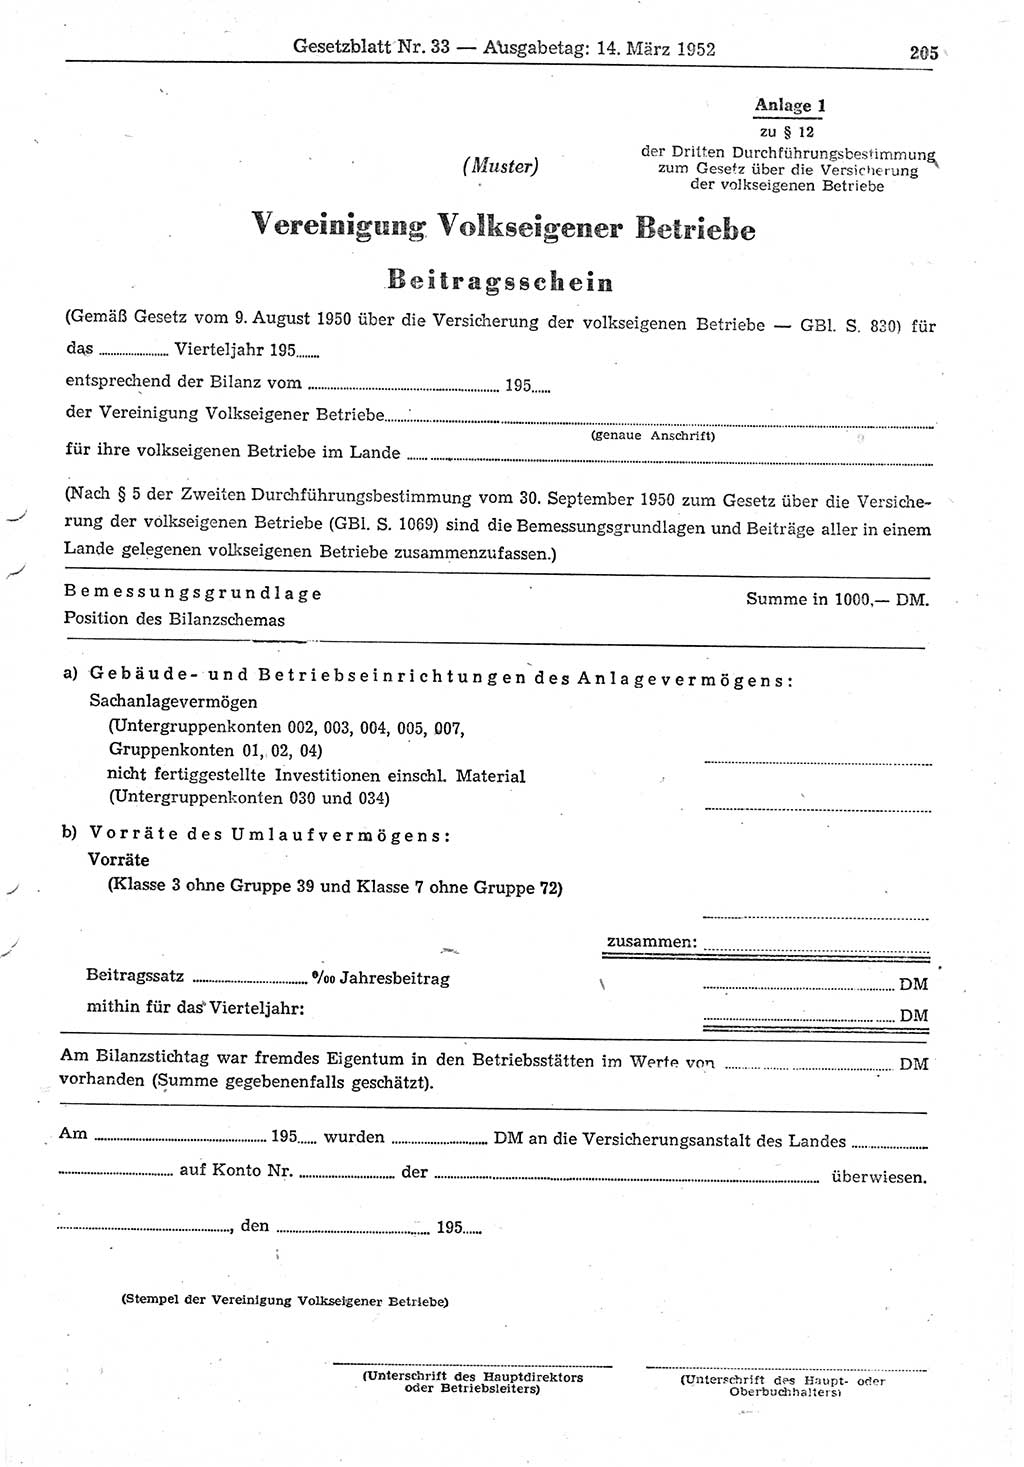 Gesetzblatt (GBl.) der Deutschen Demokratischen Republik (DDR) 1952, Seite 205 (GBl. DDR 1952, S. 205)